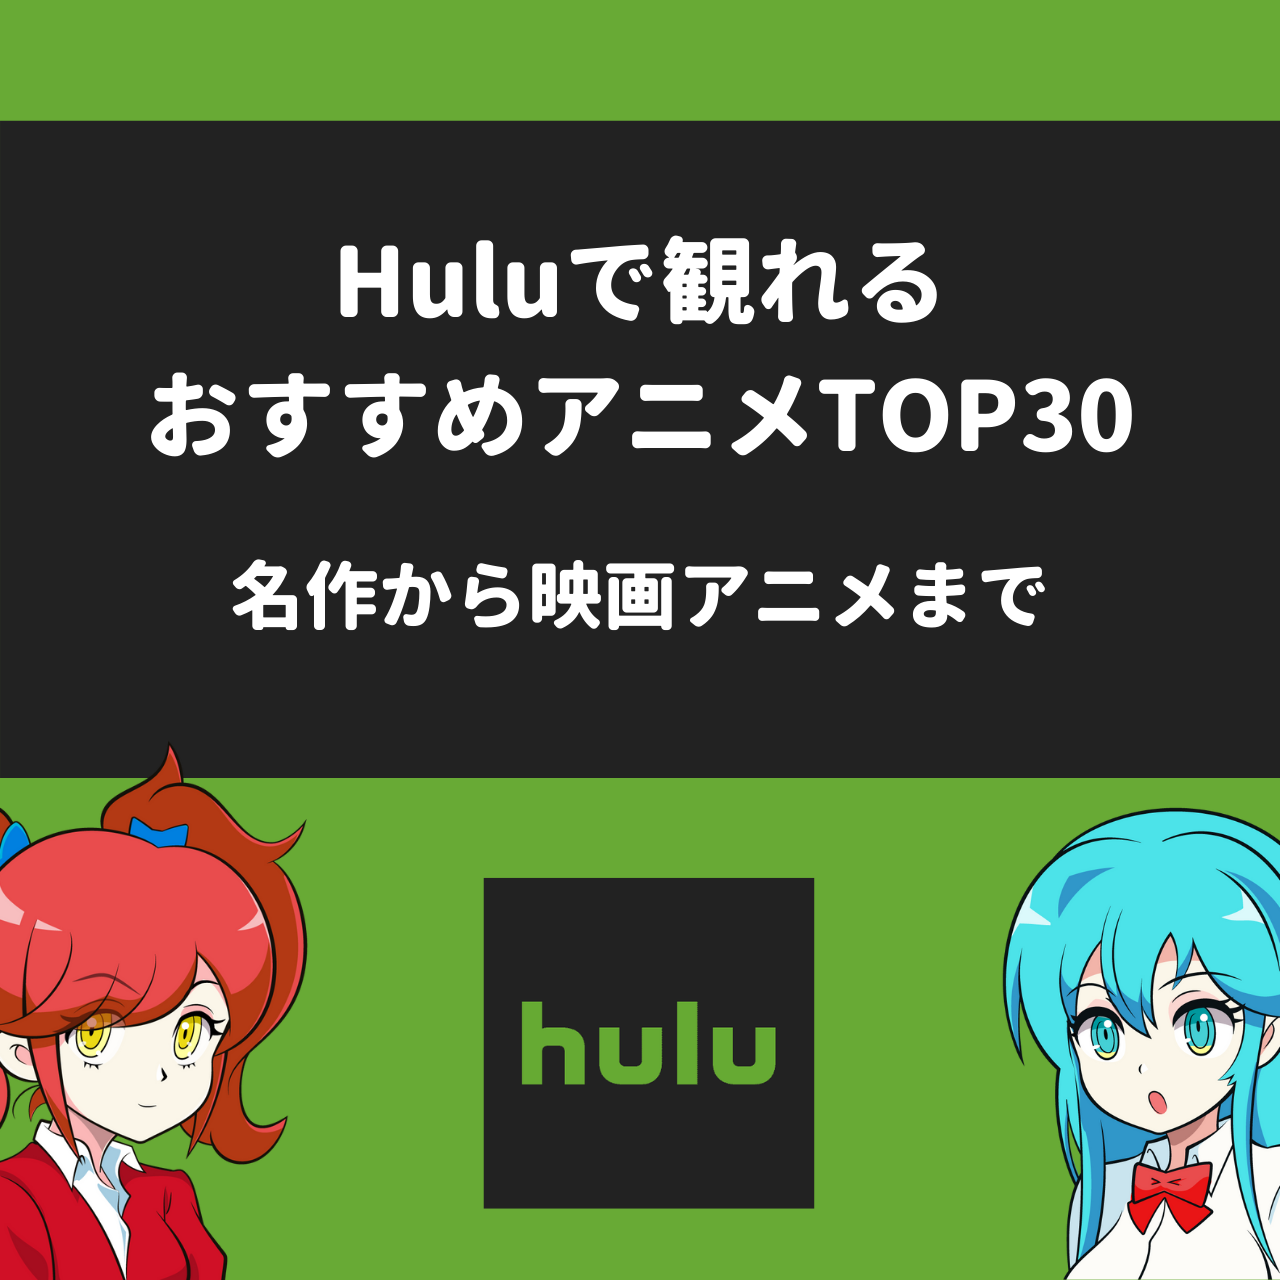 Huluで観れるおすすめアニメtop30 名作から映画アニメまで アニメガホン